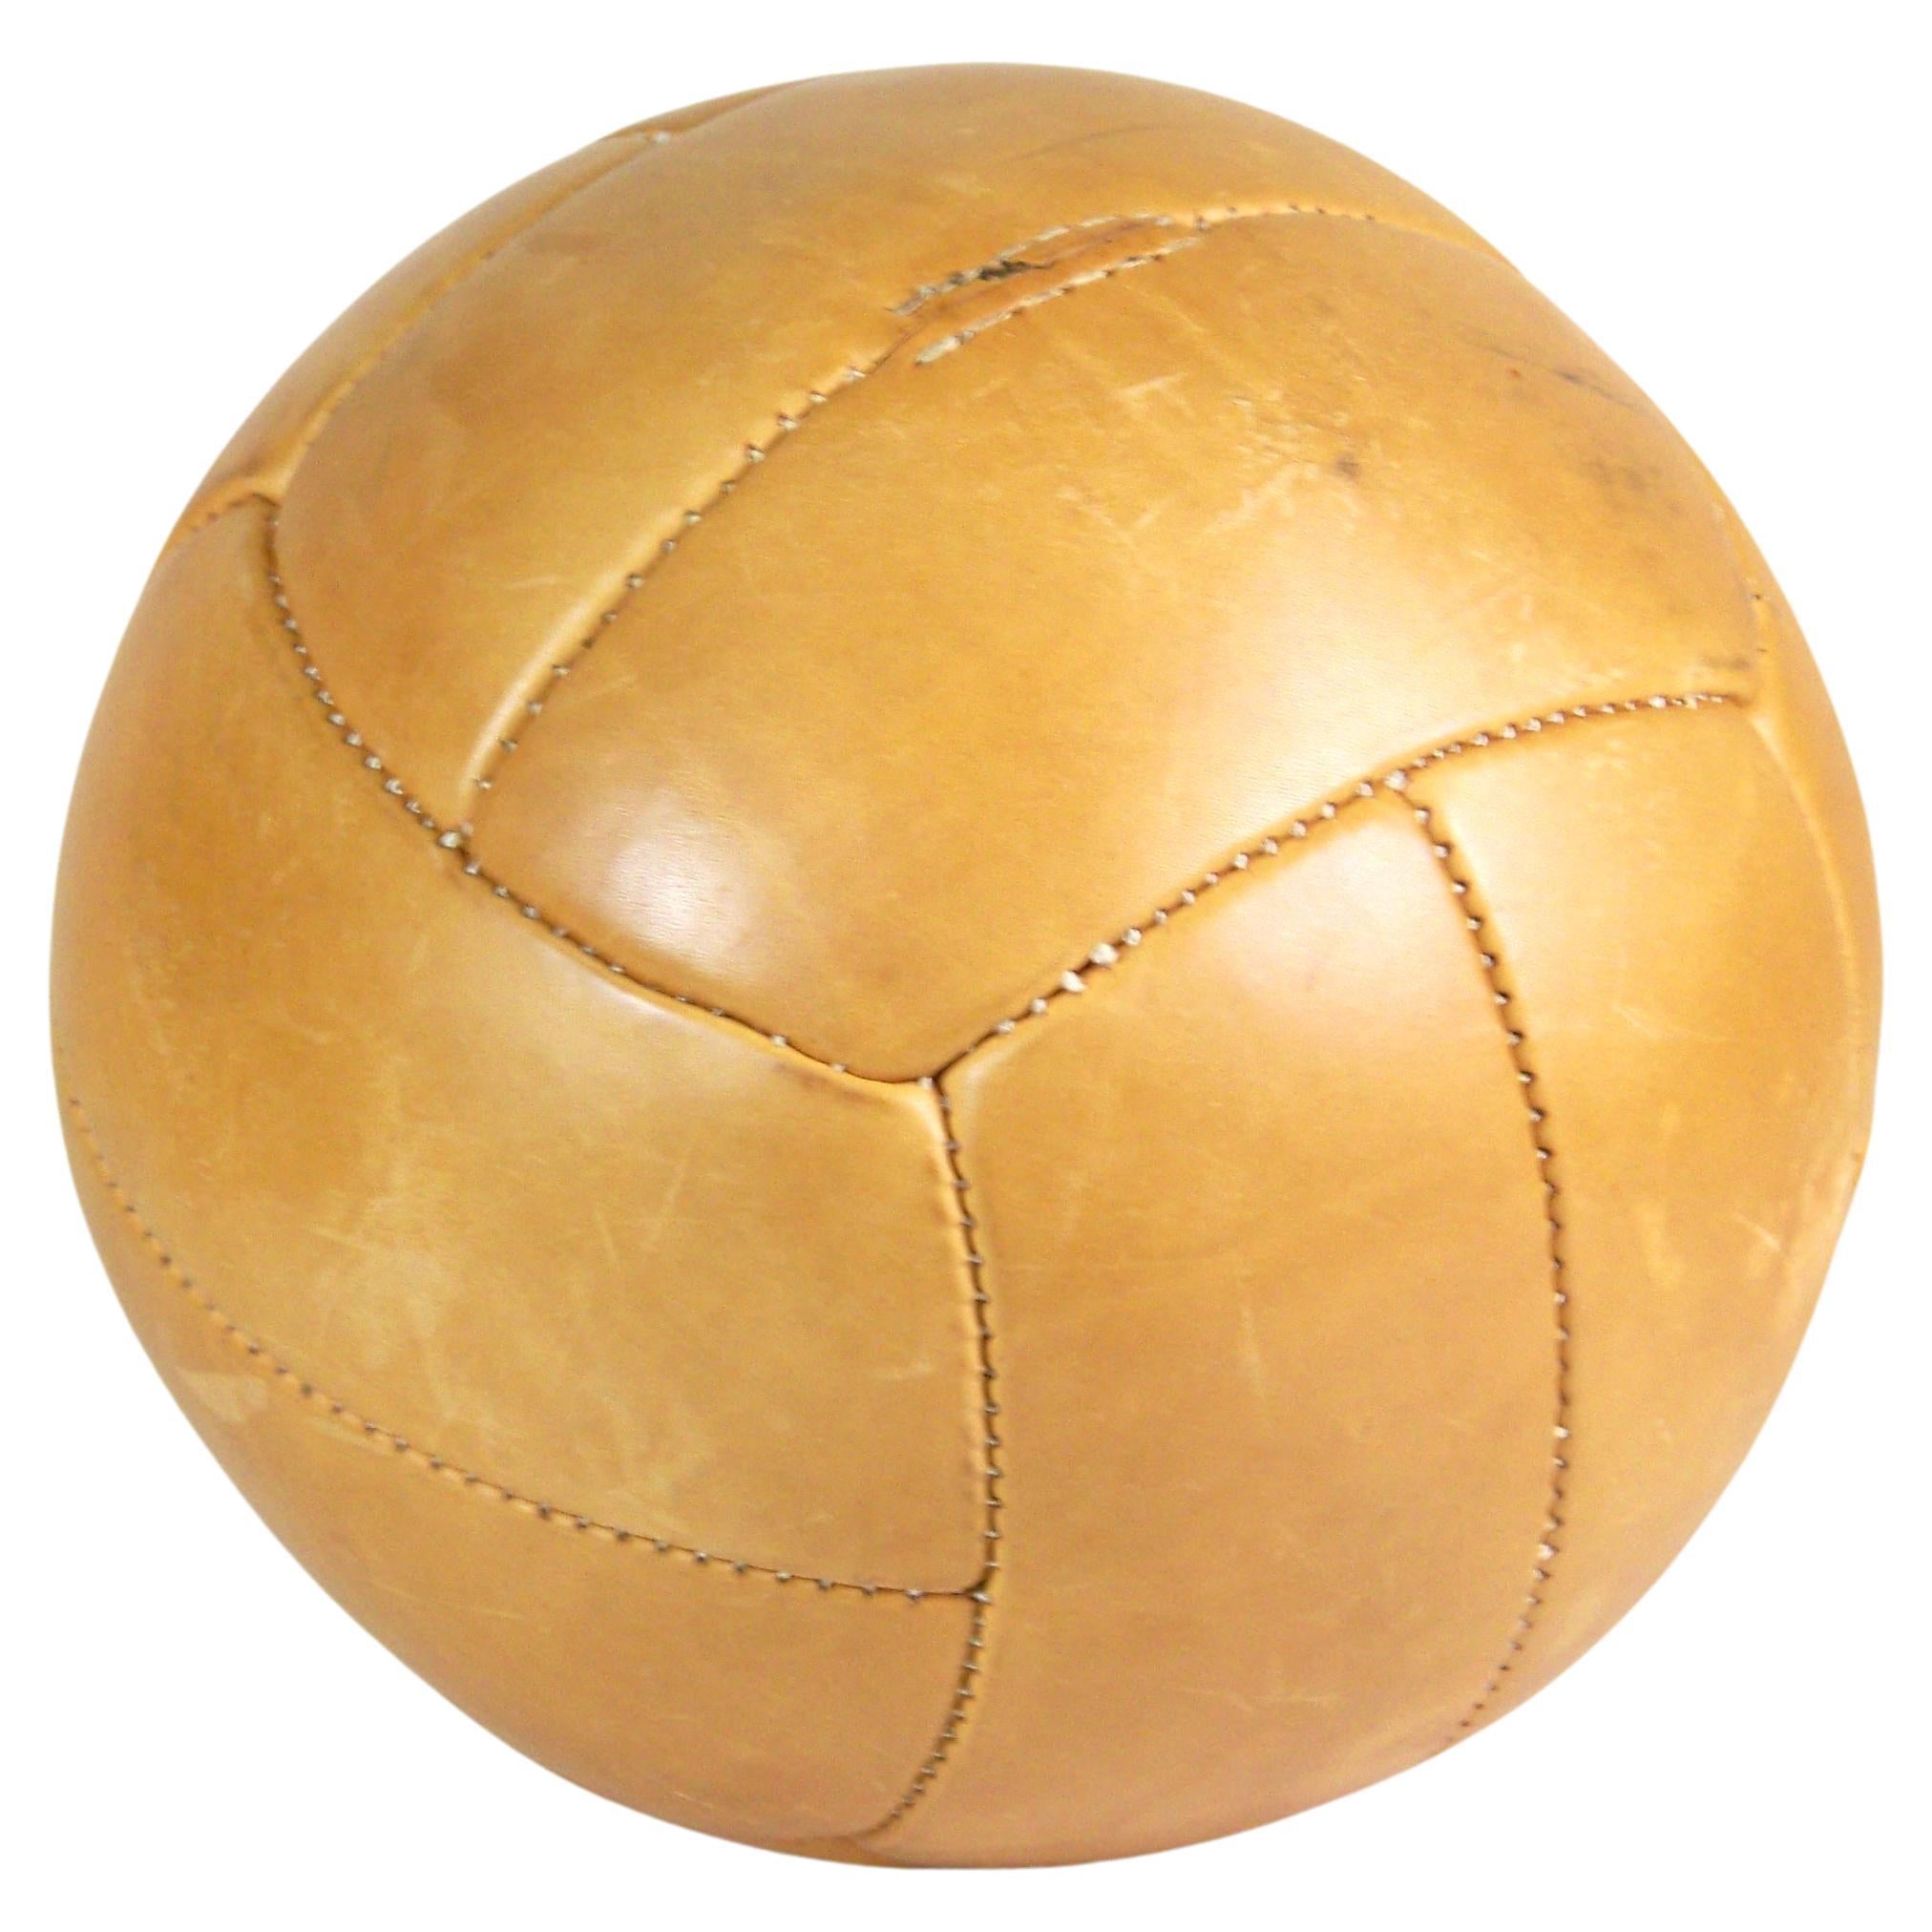 Vintage Brown Leder Medizinball - 4, 5kg - 1960er Jahre 